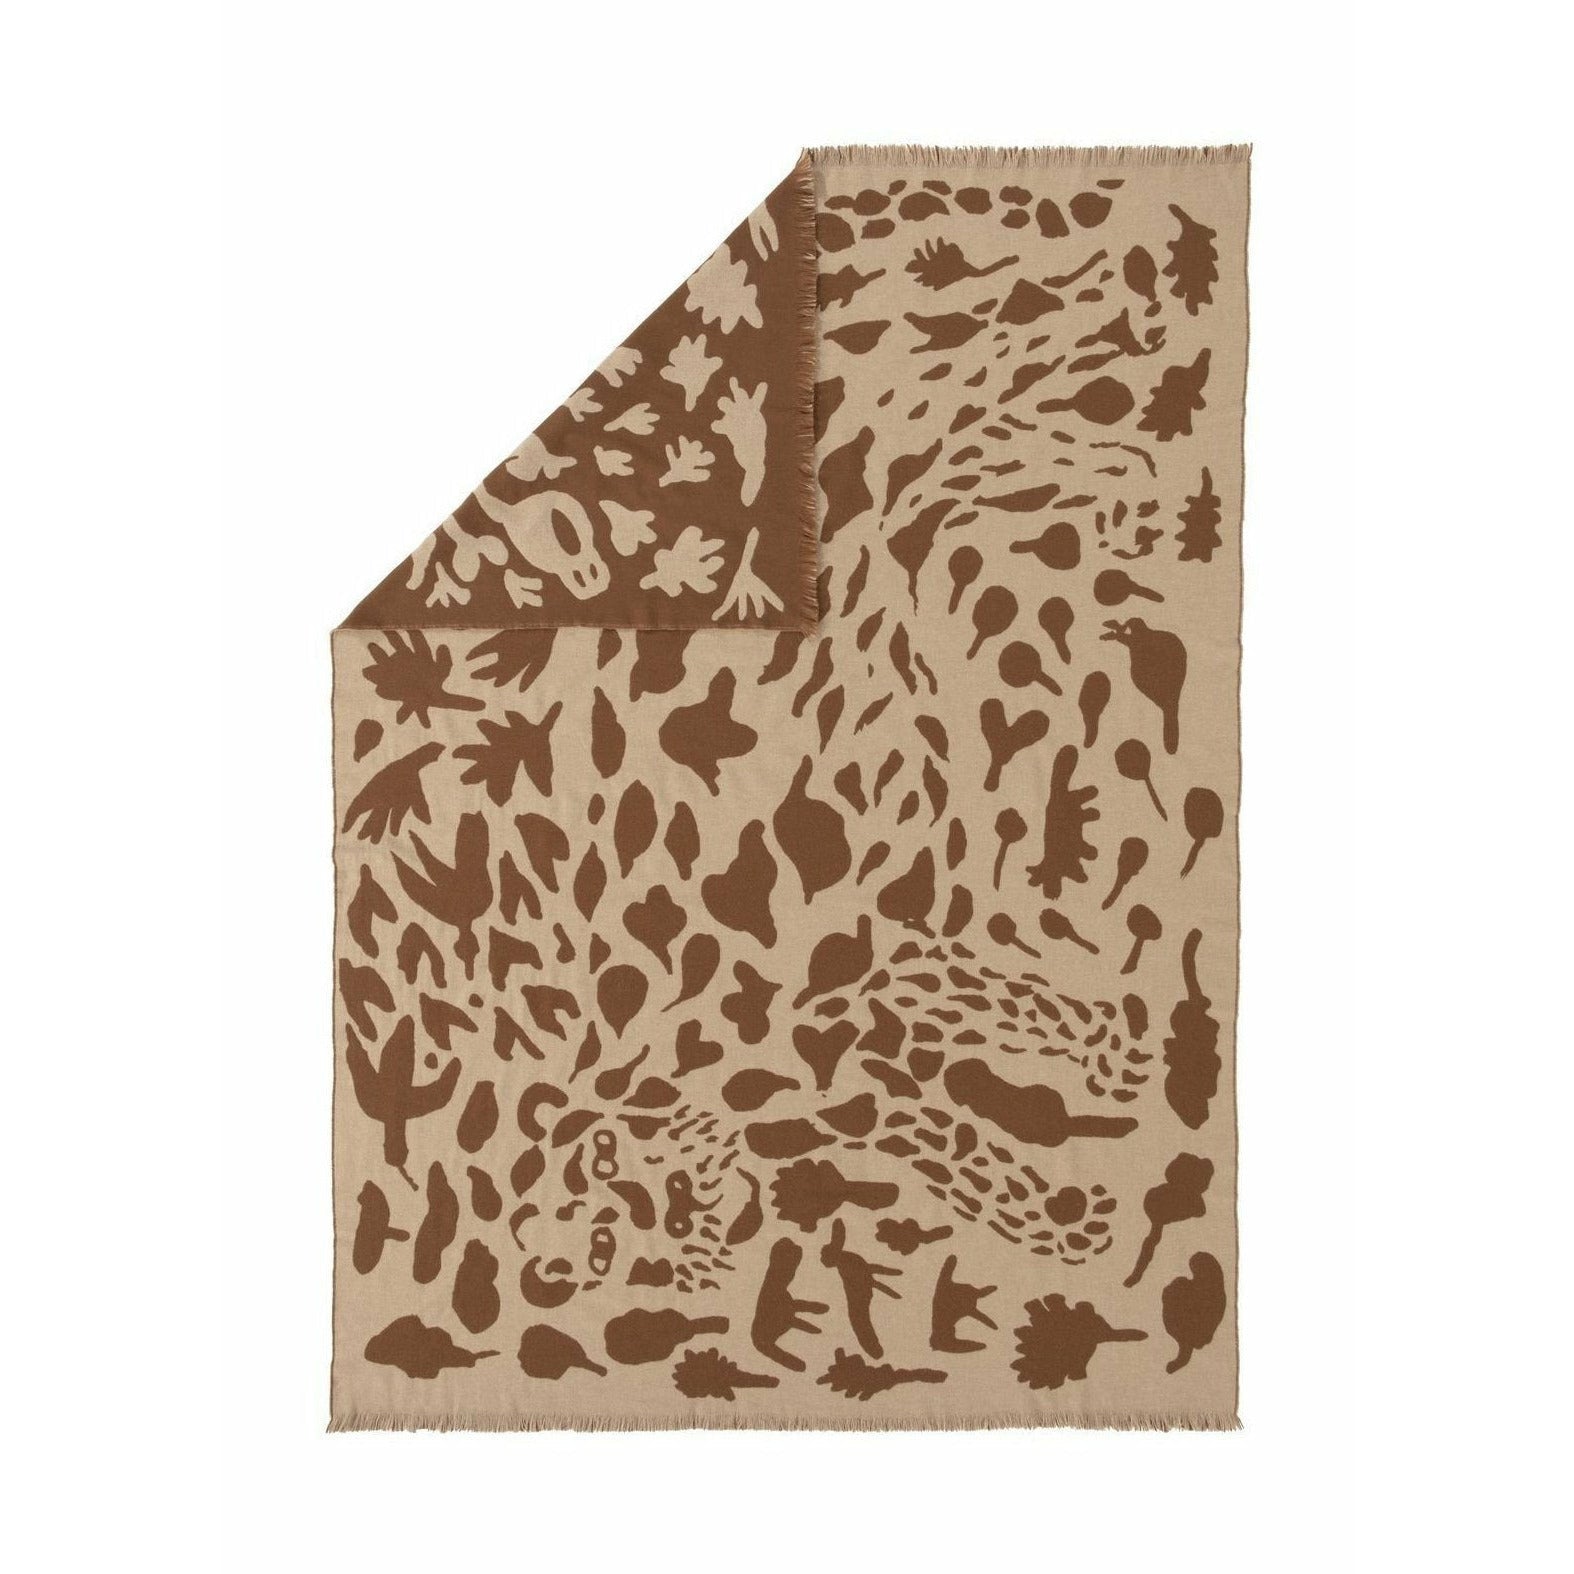 Iittala Oiva Toikka coperta Cheetah Brown, 180x130cm